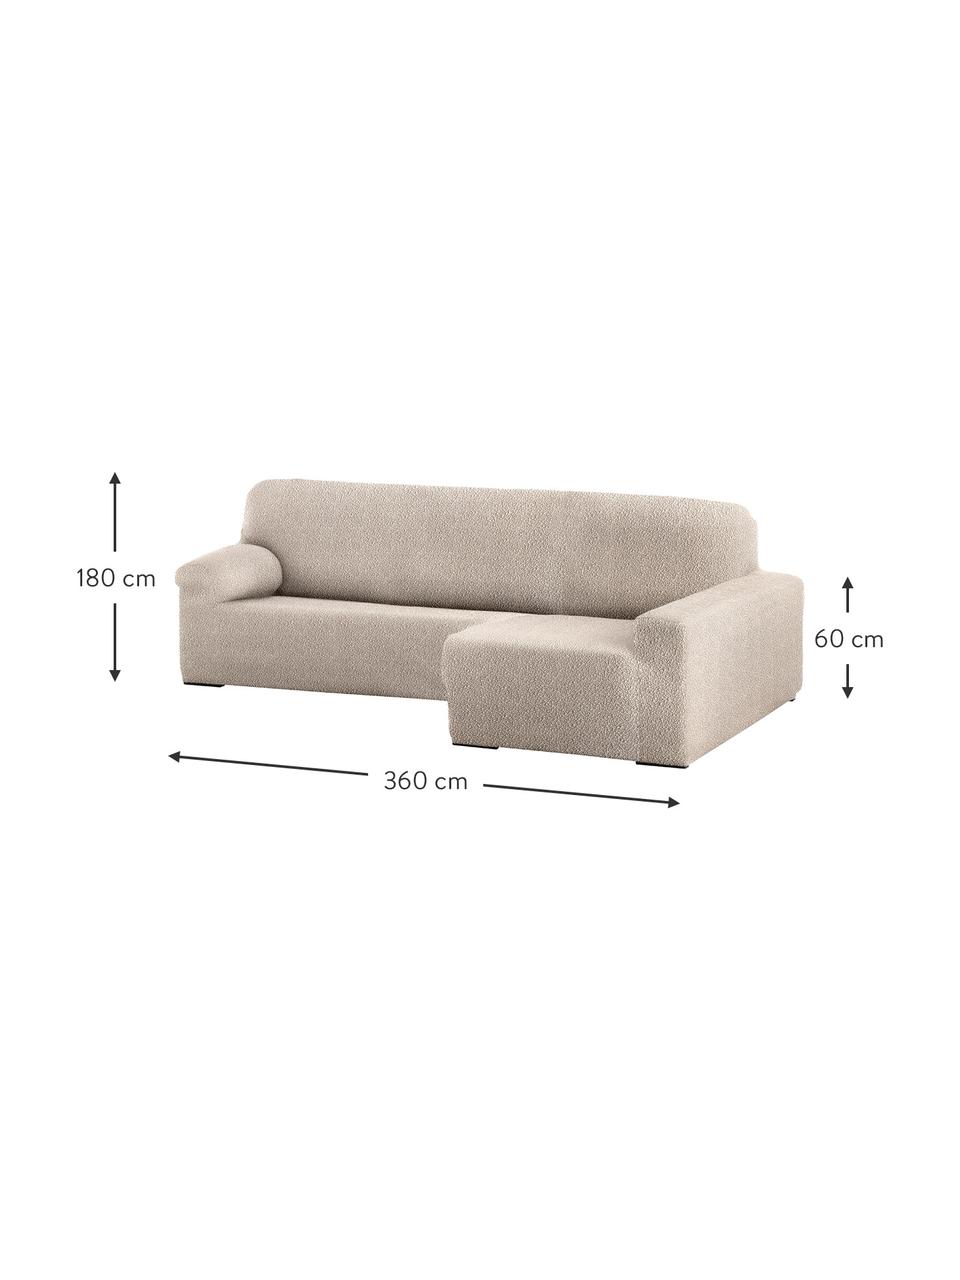 Pokrowiec na sofę narożną Roc, 55% poliester, 35% bawełna, 10% elastomer, Odcienie kremowego, S 360 x G 180 cm, prawostronna